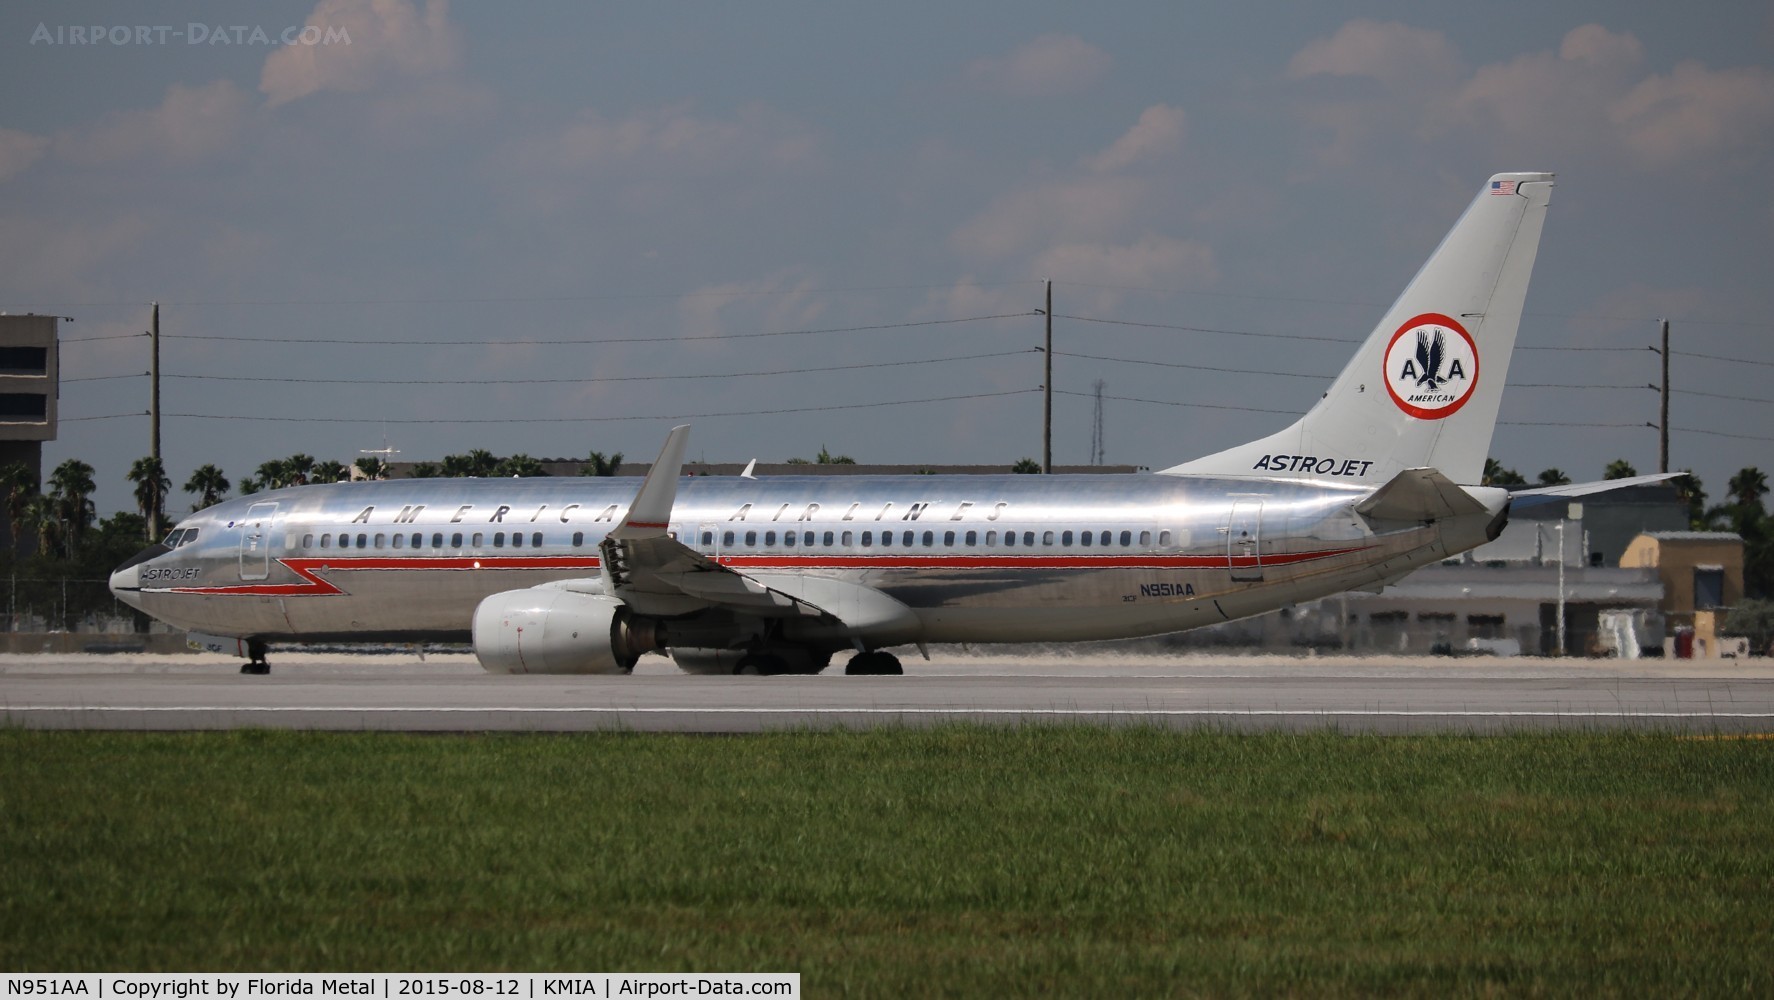 N951AA, 2000 Boeing 737-823 C/N 29538, Astrojet